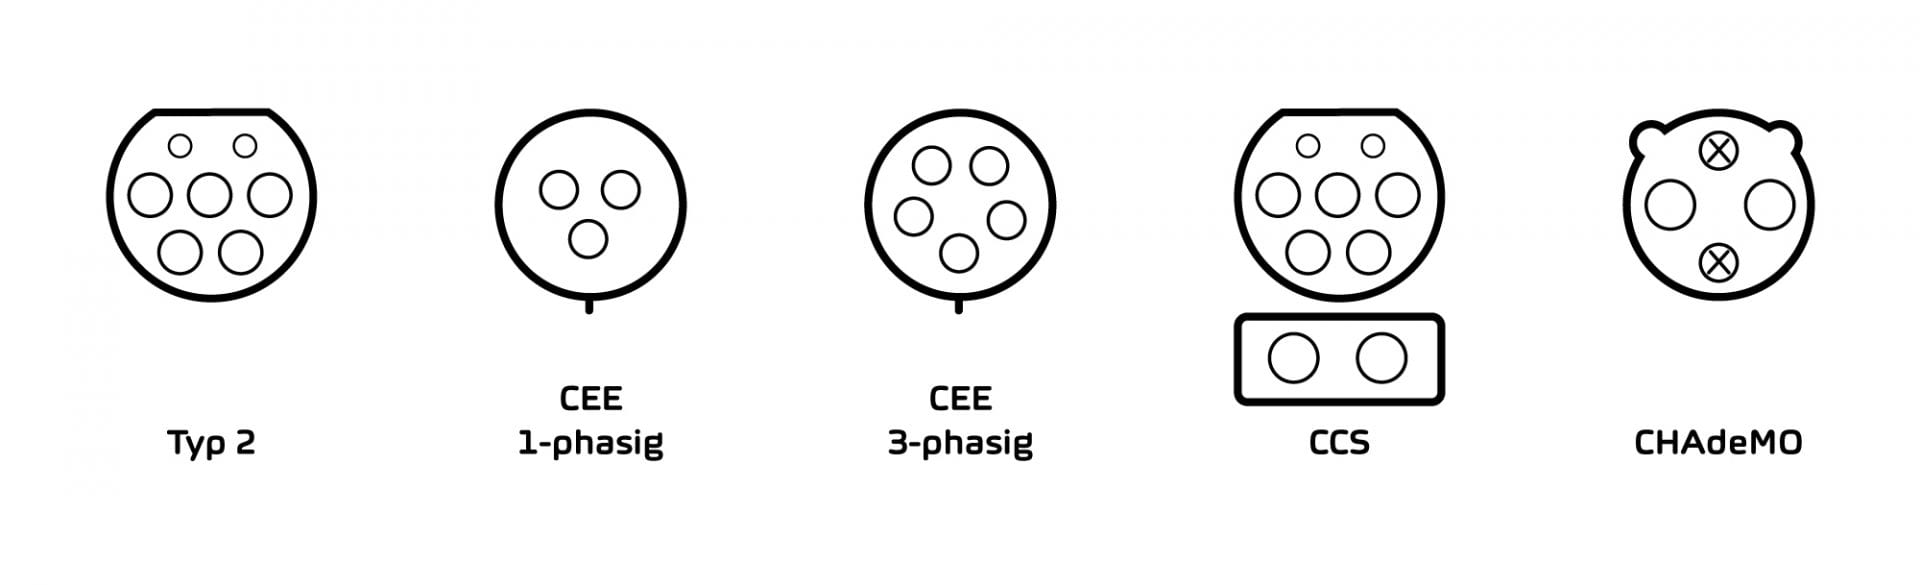 Bild, das die Steckertypen «Typ 2», «CEE», «CCS» und «CHAdeMO» gegenüberstellt.